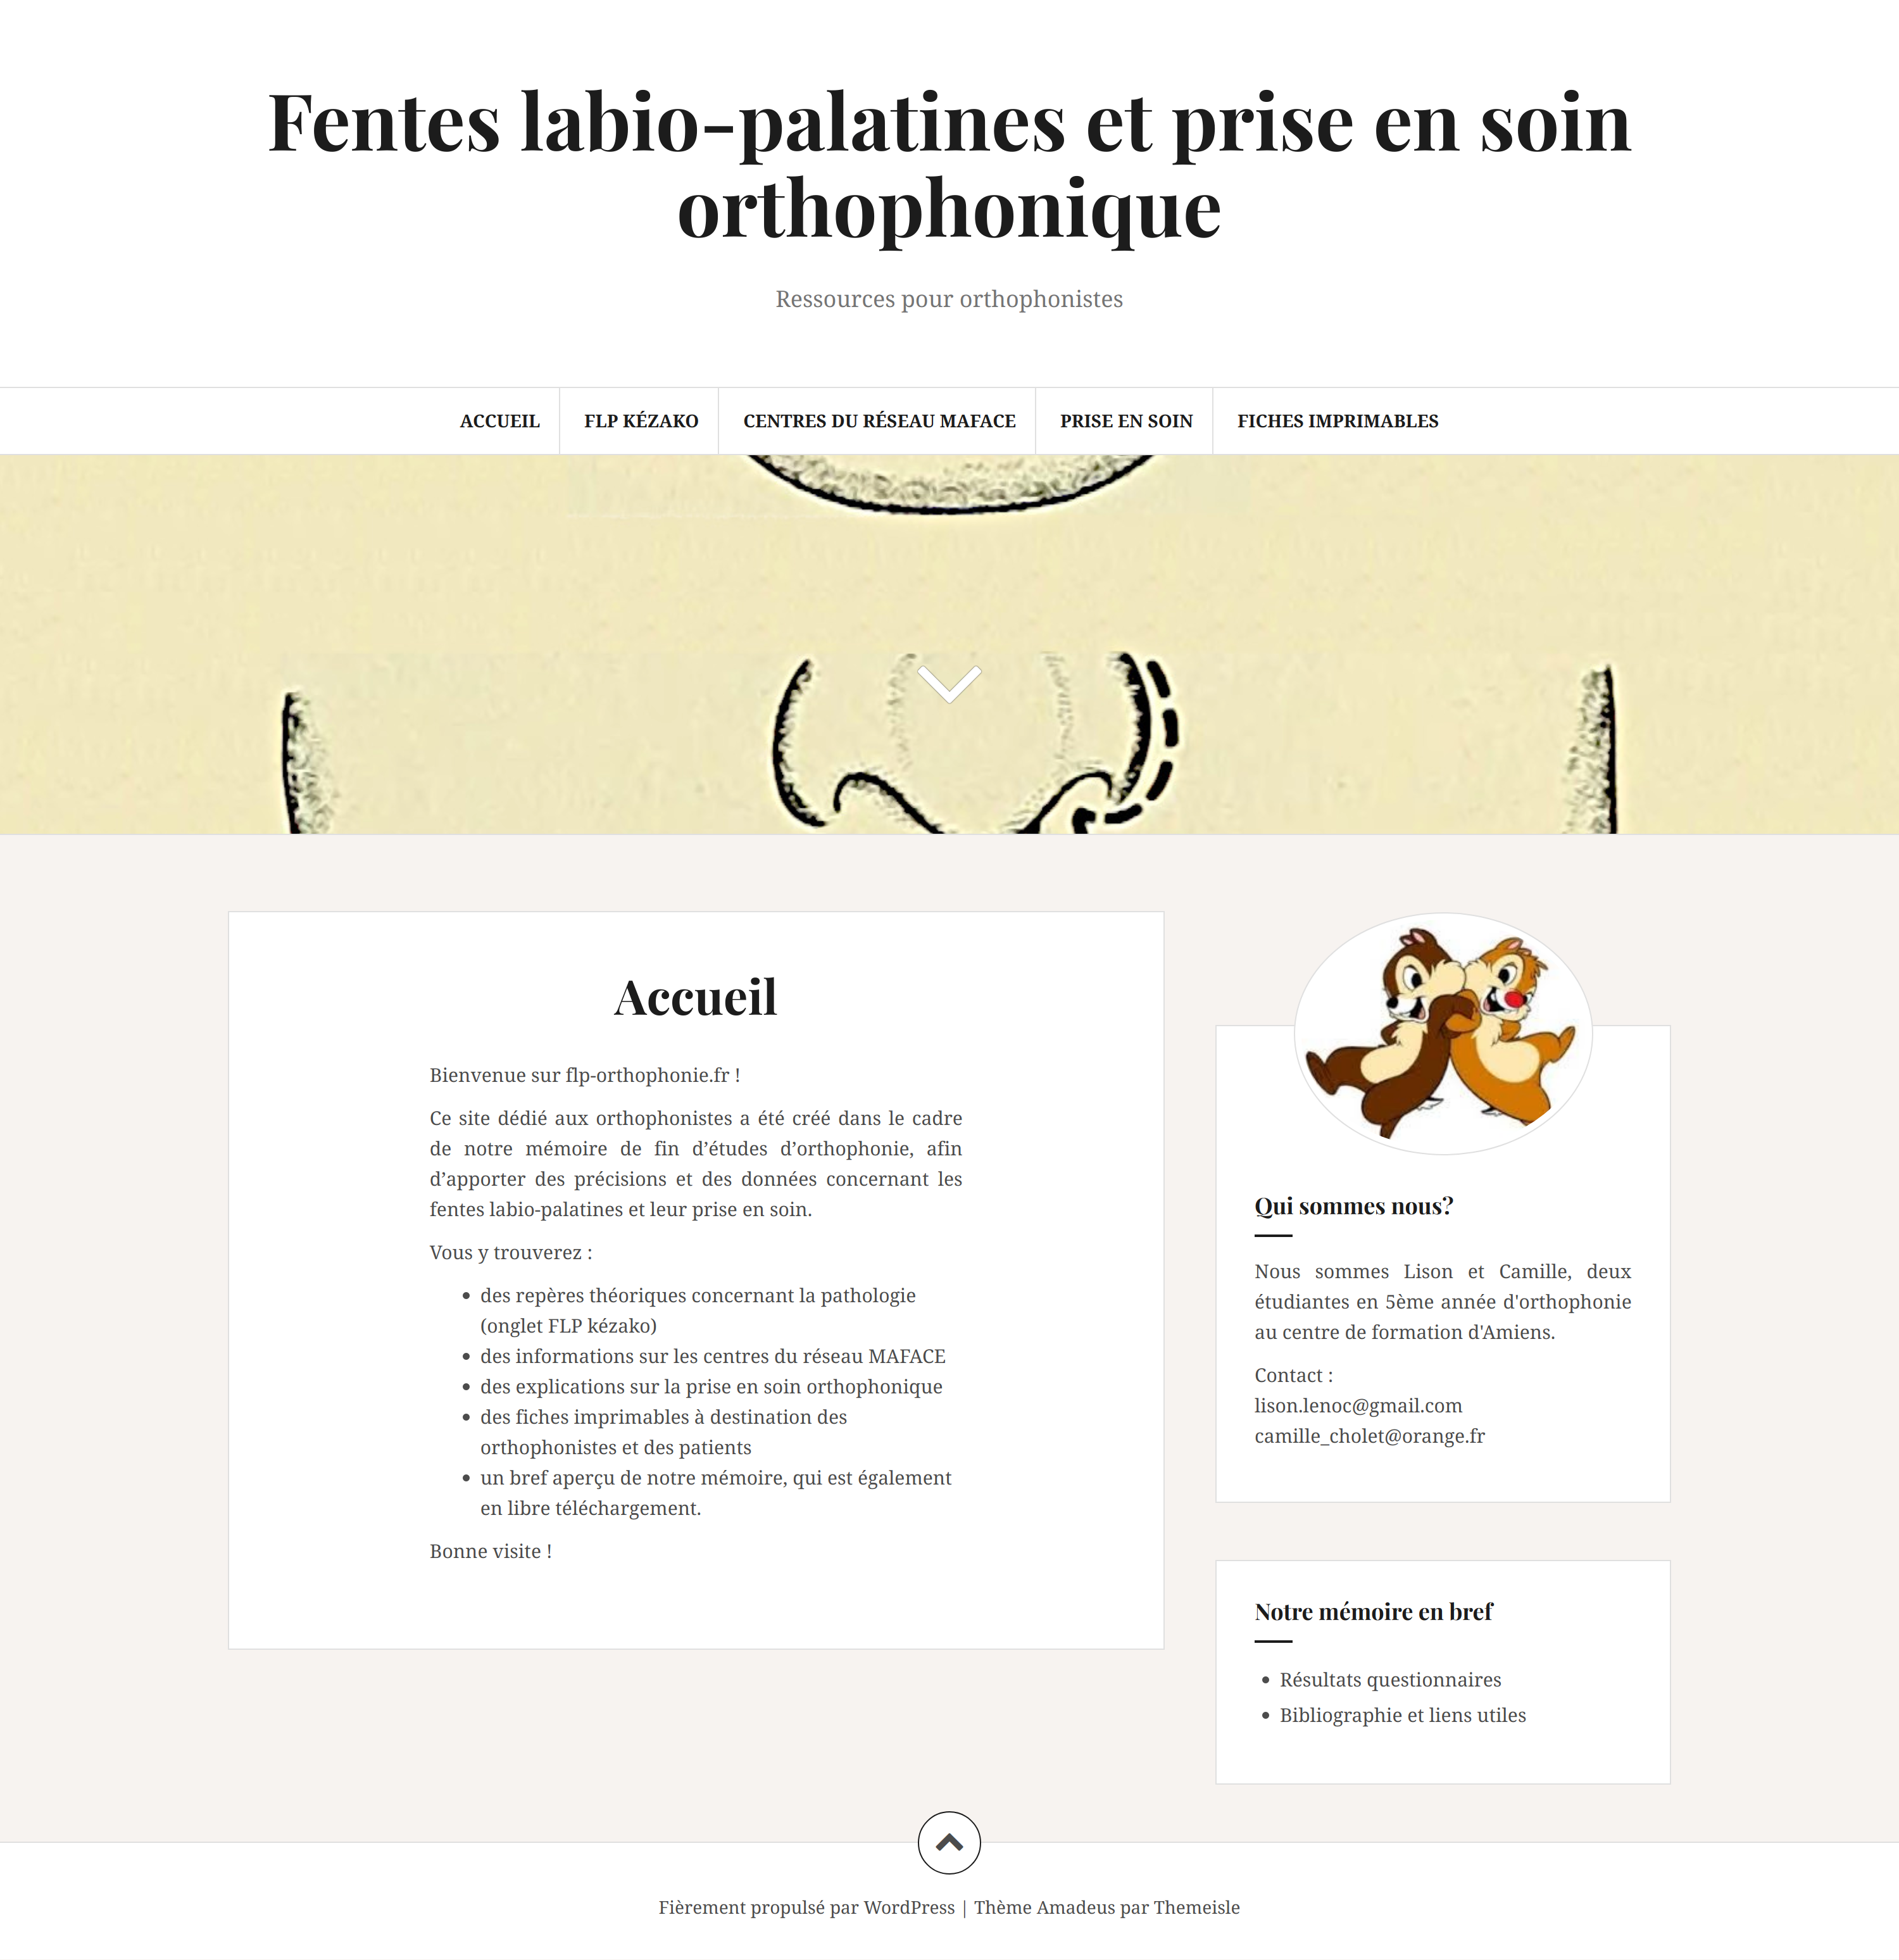 Website "Fentes labio-palatines et prise en soin orthophonique"